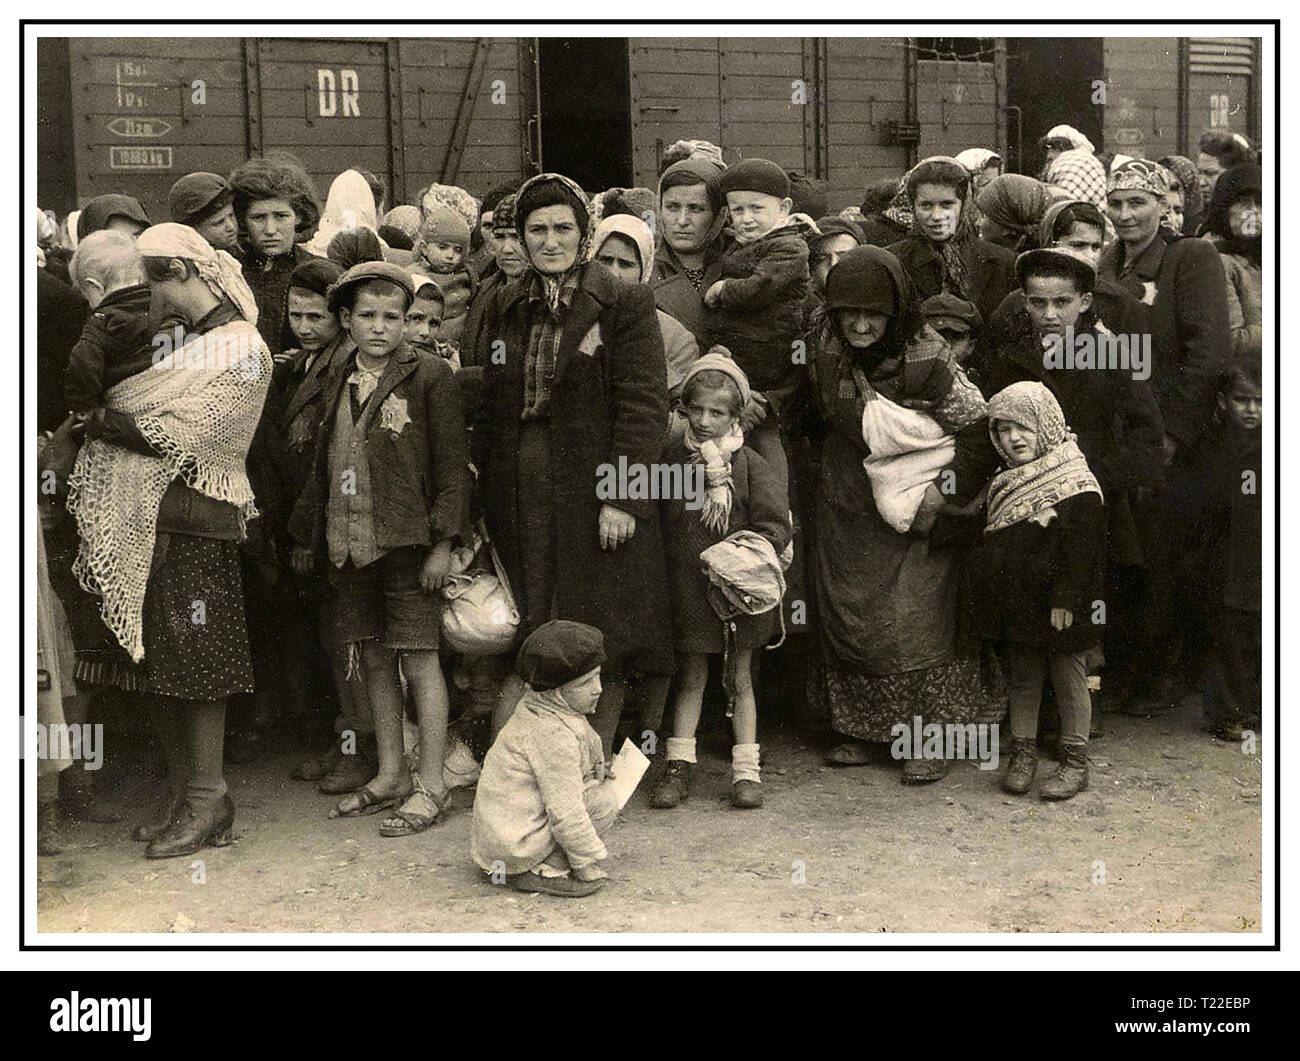 Lager Auschwitz-Birkenau Ankünfte. Poignant stark Bild von Frauen & Kinder tragen Nazi bezeichnet gelbe Sterne, die mit dem Auto anreisen, unhygienische Viehtransporter in Auschwitz-Birkenau, ein WW2 German Nazi Konzentrations- und Vernichtungslager. Jüdische Kinder wurden die größte Gruppe der Deportierten des Lagers zusammen mit Erwachsenen, Anfang 1942, als Teil der "Endlösung der Judenfrage" - die totale Vernichtung der jüdischen Bevölkerung Europas. Konzentrationslager Auschwitz wurde in ein Netzwerk von NS-Vernichtungslager des Dritten Reiches in den polnischen Gebieten betrieben im Anhang des nationalsozialistischen Deutschland während des Zweiten Weltkrieges. Stockfoto